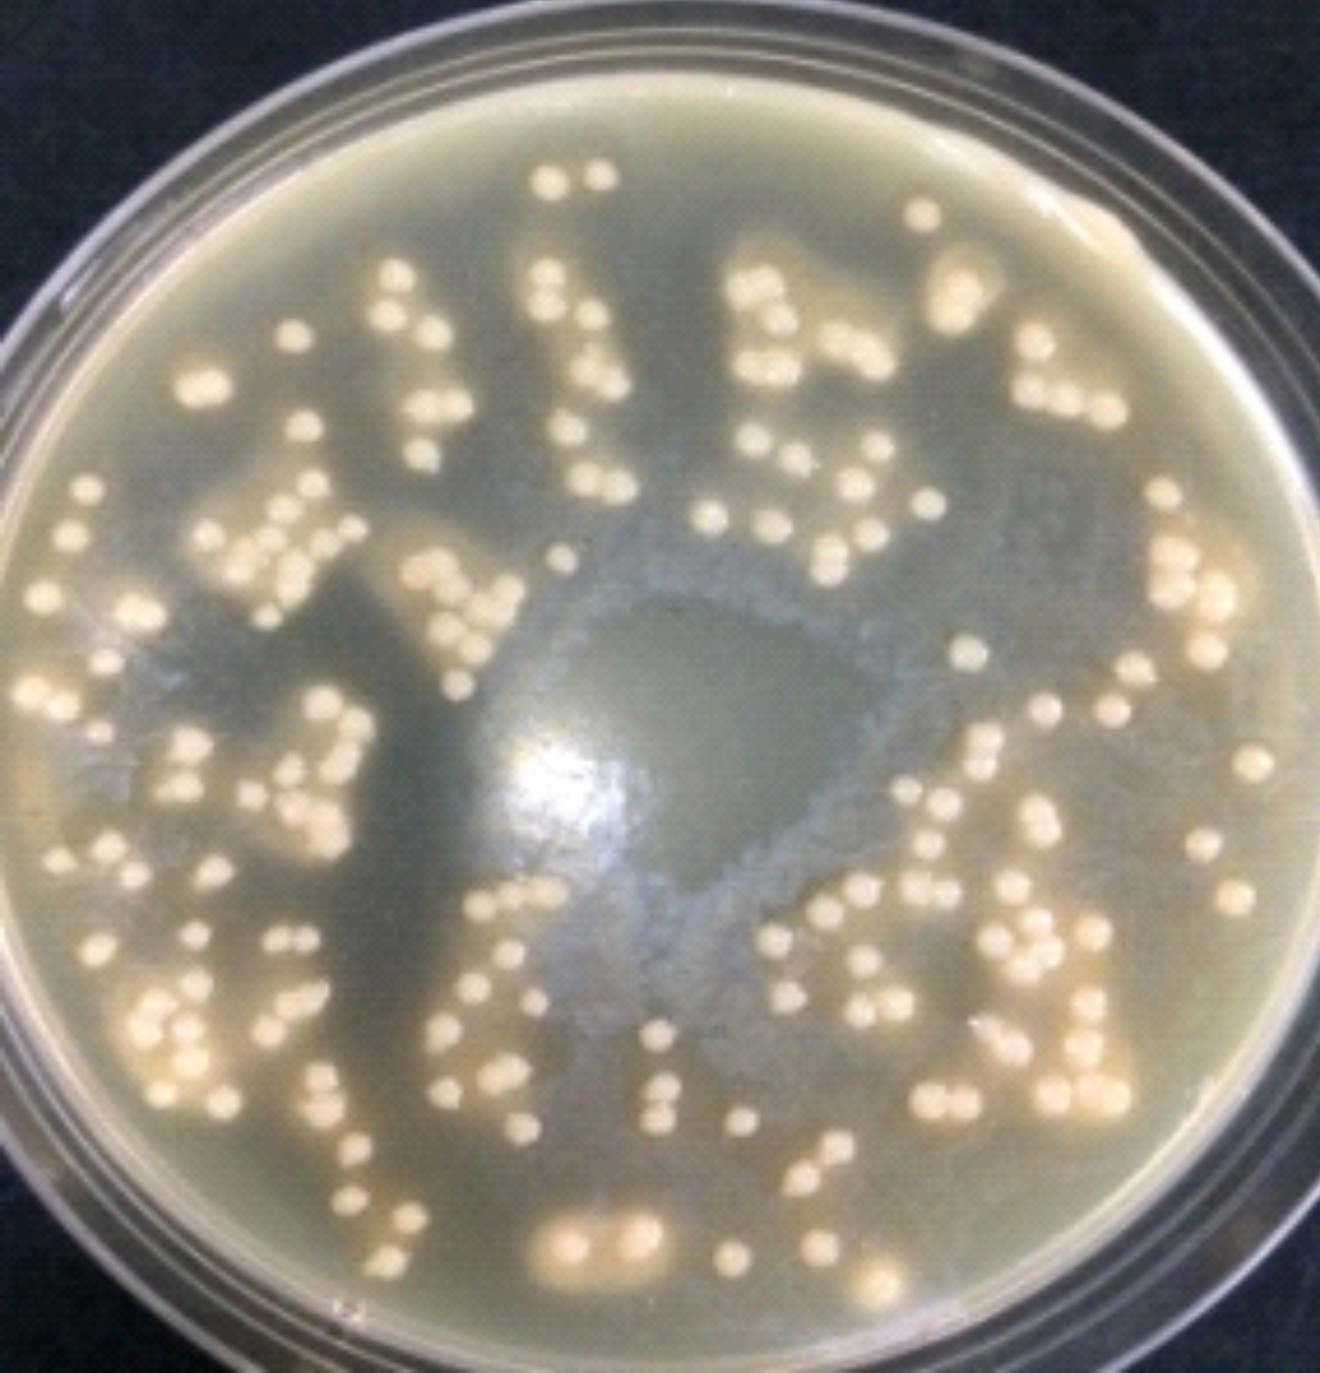 唐菖蒲伯克霍尔德氏菌在卵黄琼脂平板上的生长特征